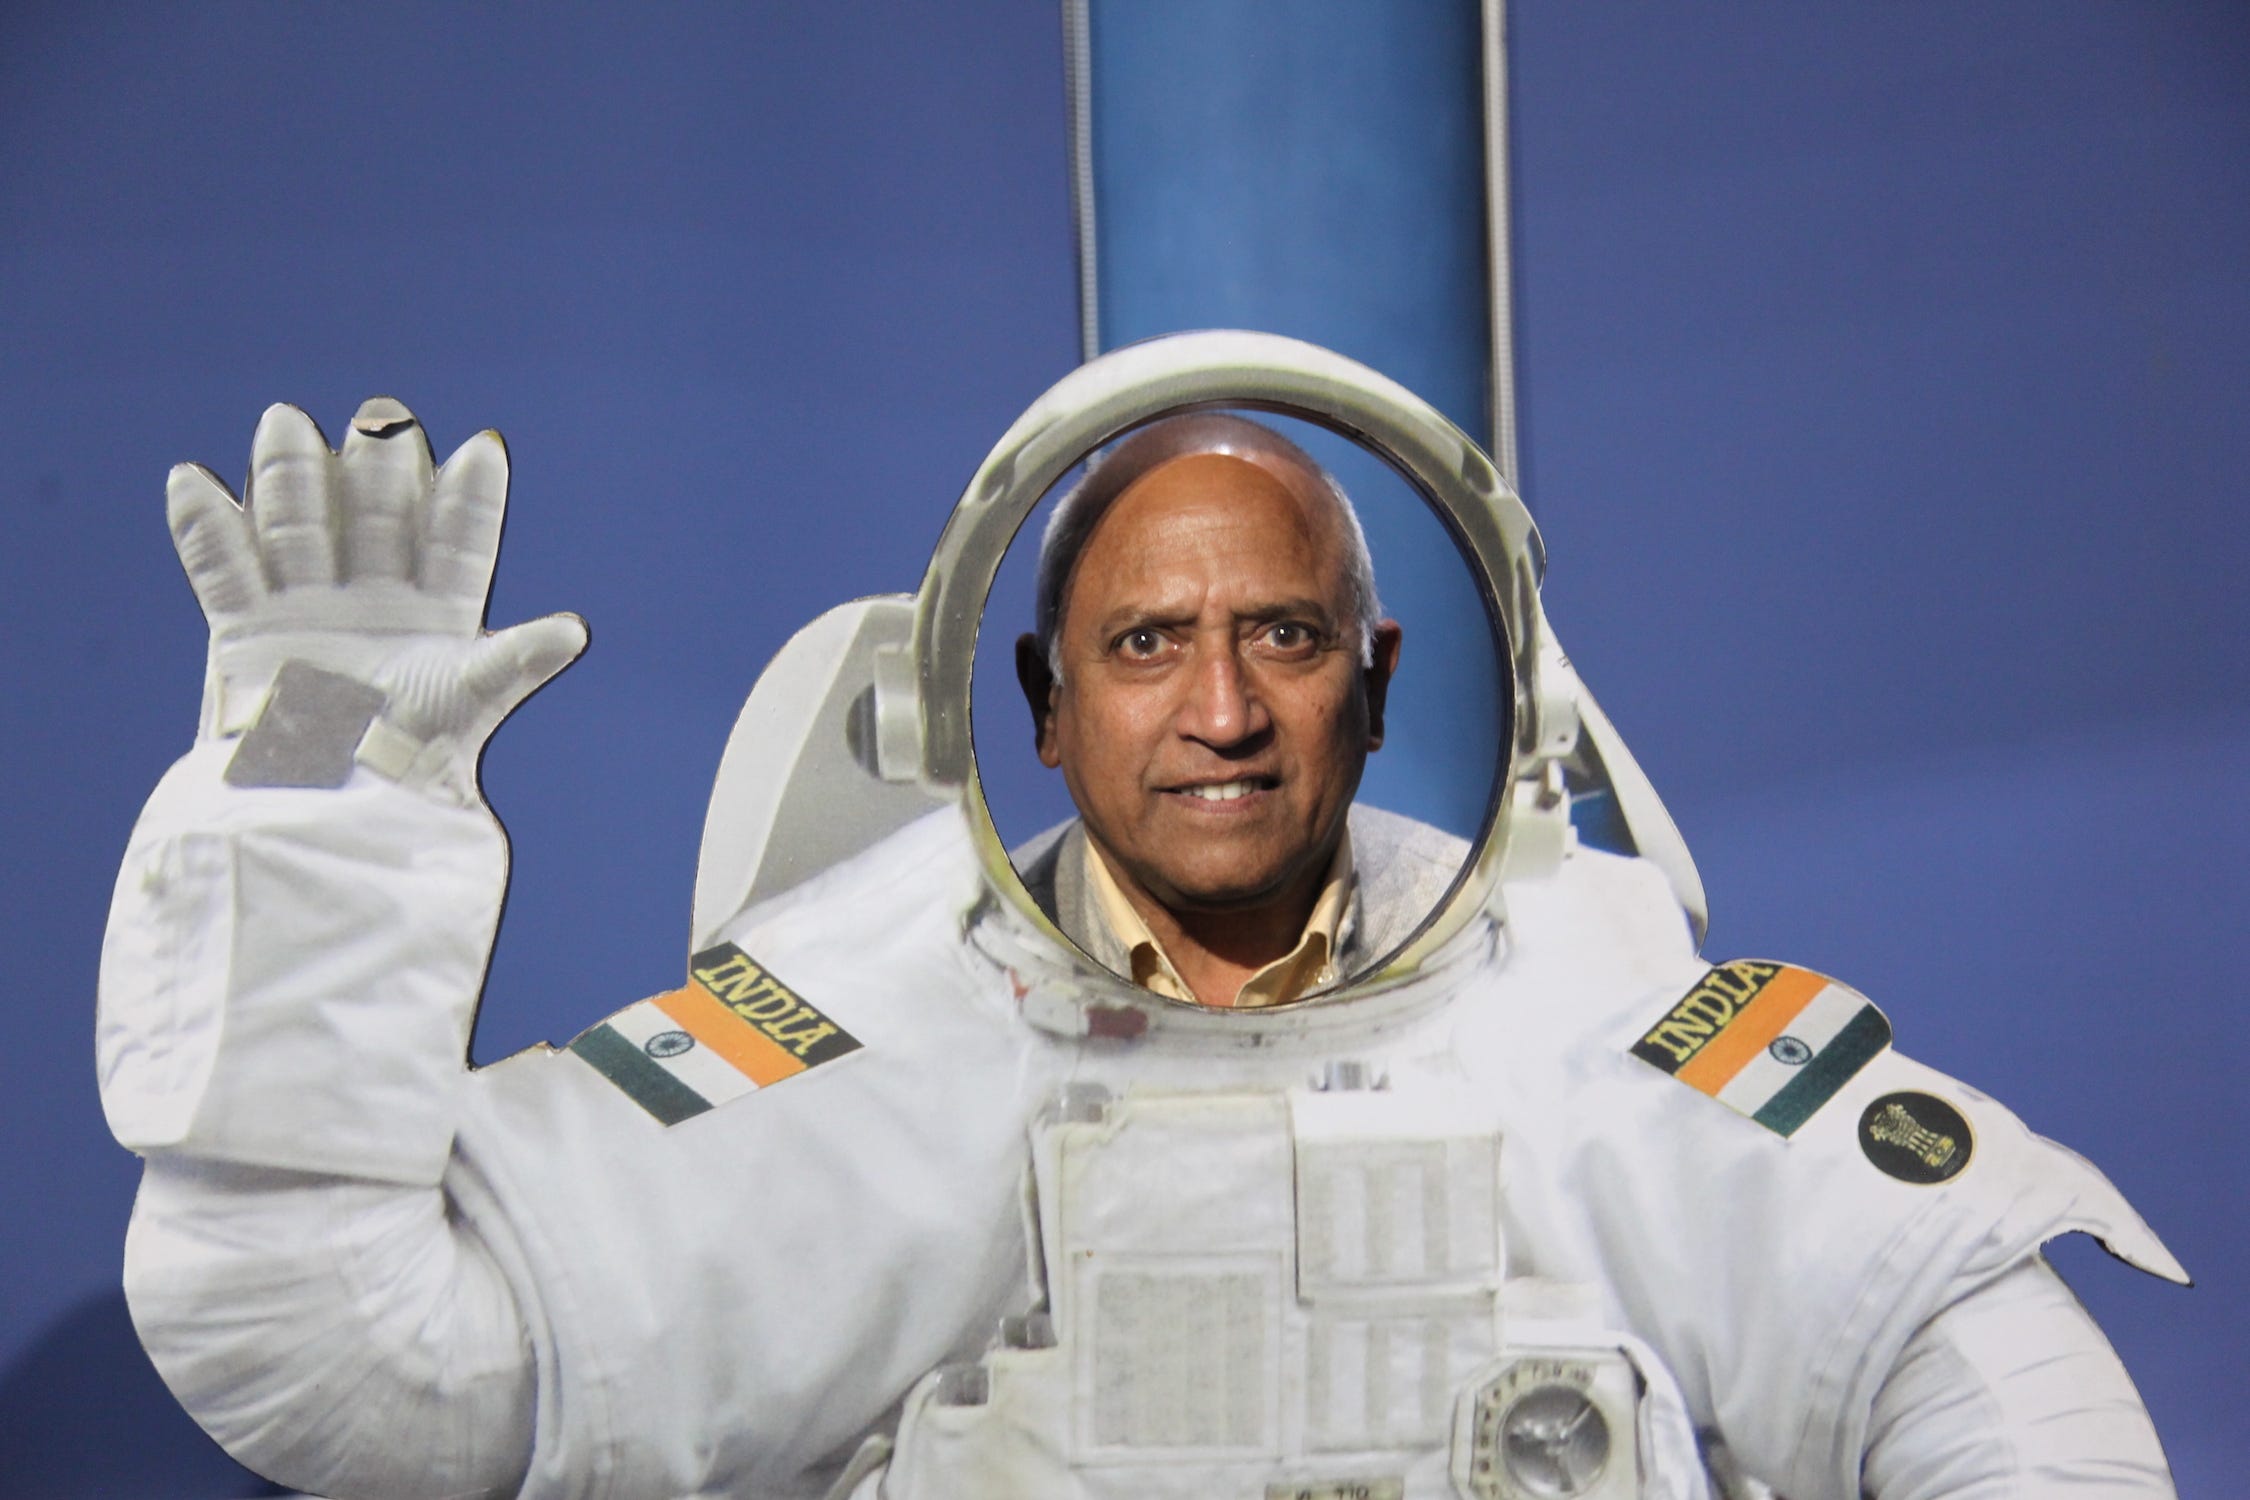 Mann posiert in weißer, wehender Astronautenuniform mit Aufnähern der indischen Flagge auf jeder Schulter